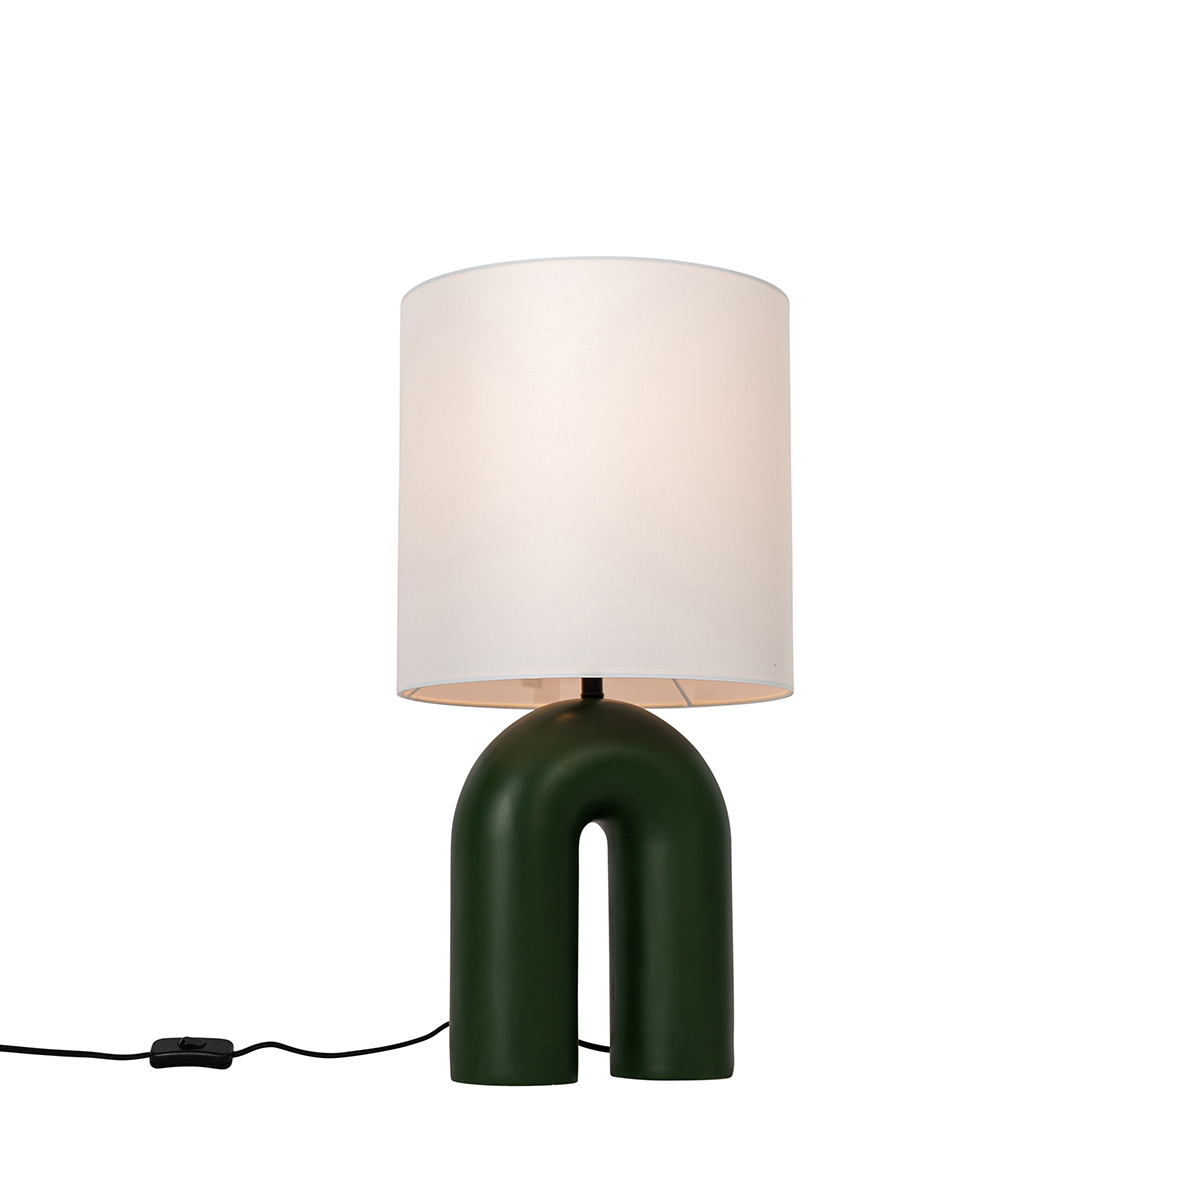 Designer bordlampe grønn med hvit linskjerm - Lotti